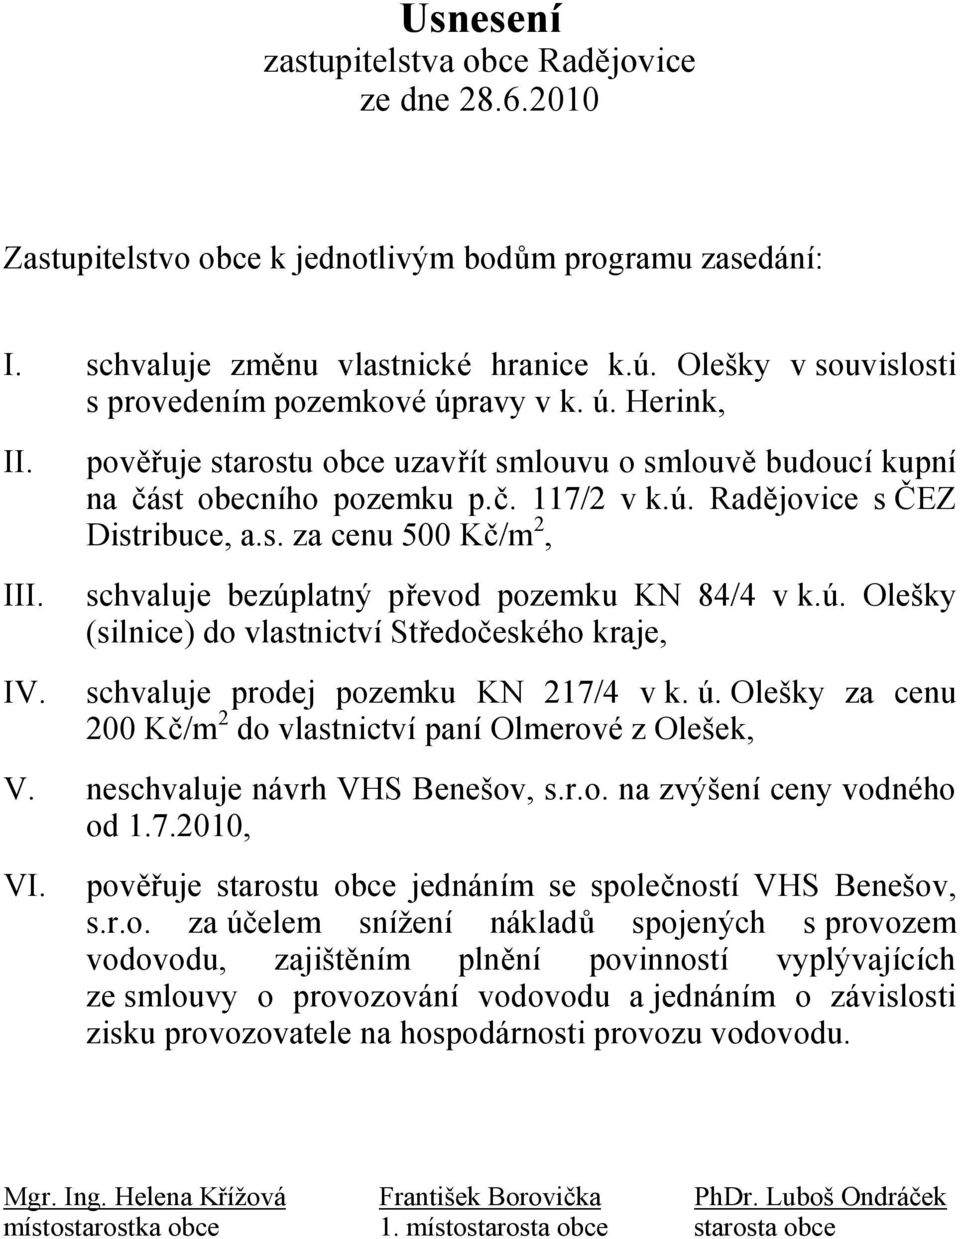 s. za cenu 500 Kč/m 2, schvaluje bezúplatný převod pozemku KN 84/4 v k.ú. Olešky (silnice) do vlastnictví Středočeského kraje, schvaluje prodej pozemku KN 217/4 v k. ú.